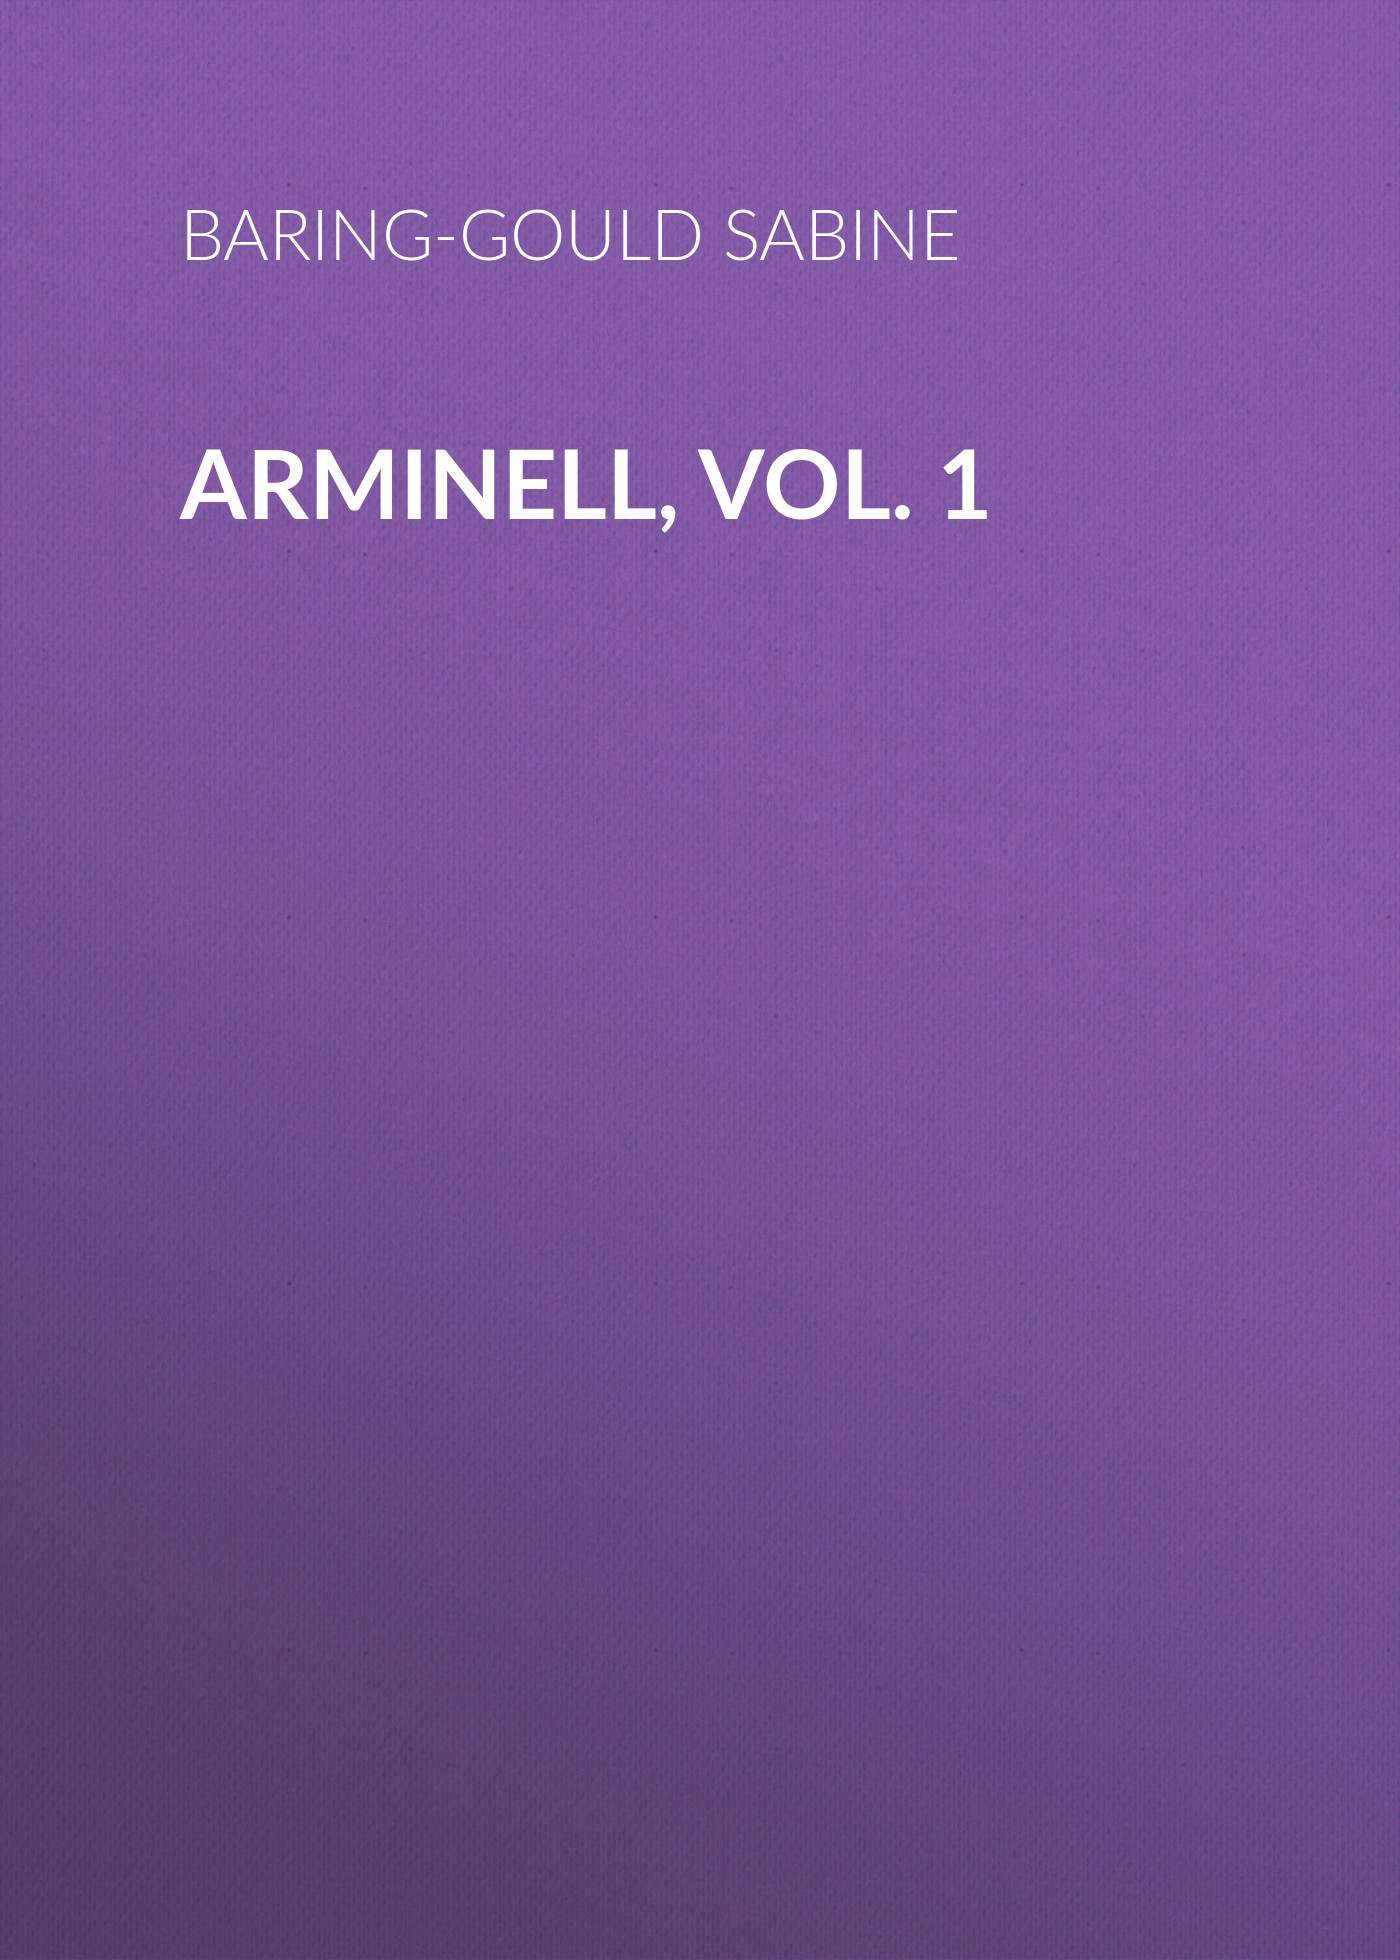 Книга Arminell, Vol. 1 из серии , созданная Sabine Baring-Gould, может относится к жанру Зарубежная старинная литература, Зарубежная классика. Стоимость электронной книги Arminell, Vol. 1 с идентификатором 24177180 составляет 0 руб.